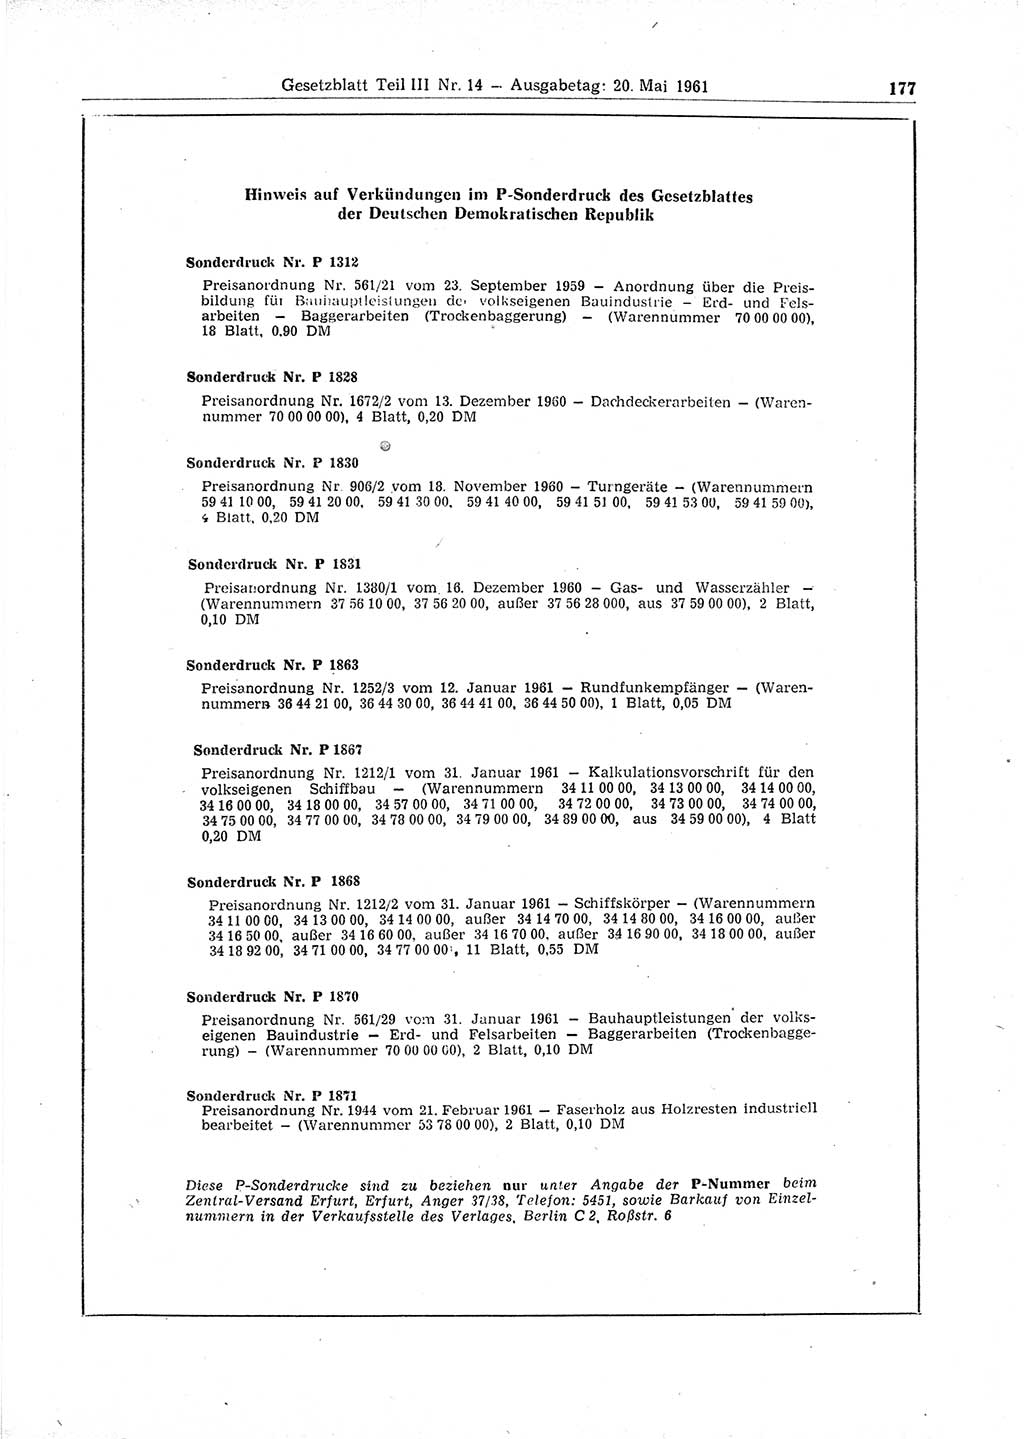 Gesetzblatt (GBl.) der Deutschen Demokratischen Republik (DDR) Teil ⅠⅠⅠ 1961, Seite 177 (GBl. DDR ⅠⅠⅠ 1961, S. 177)